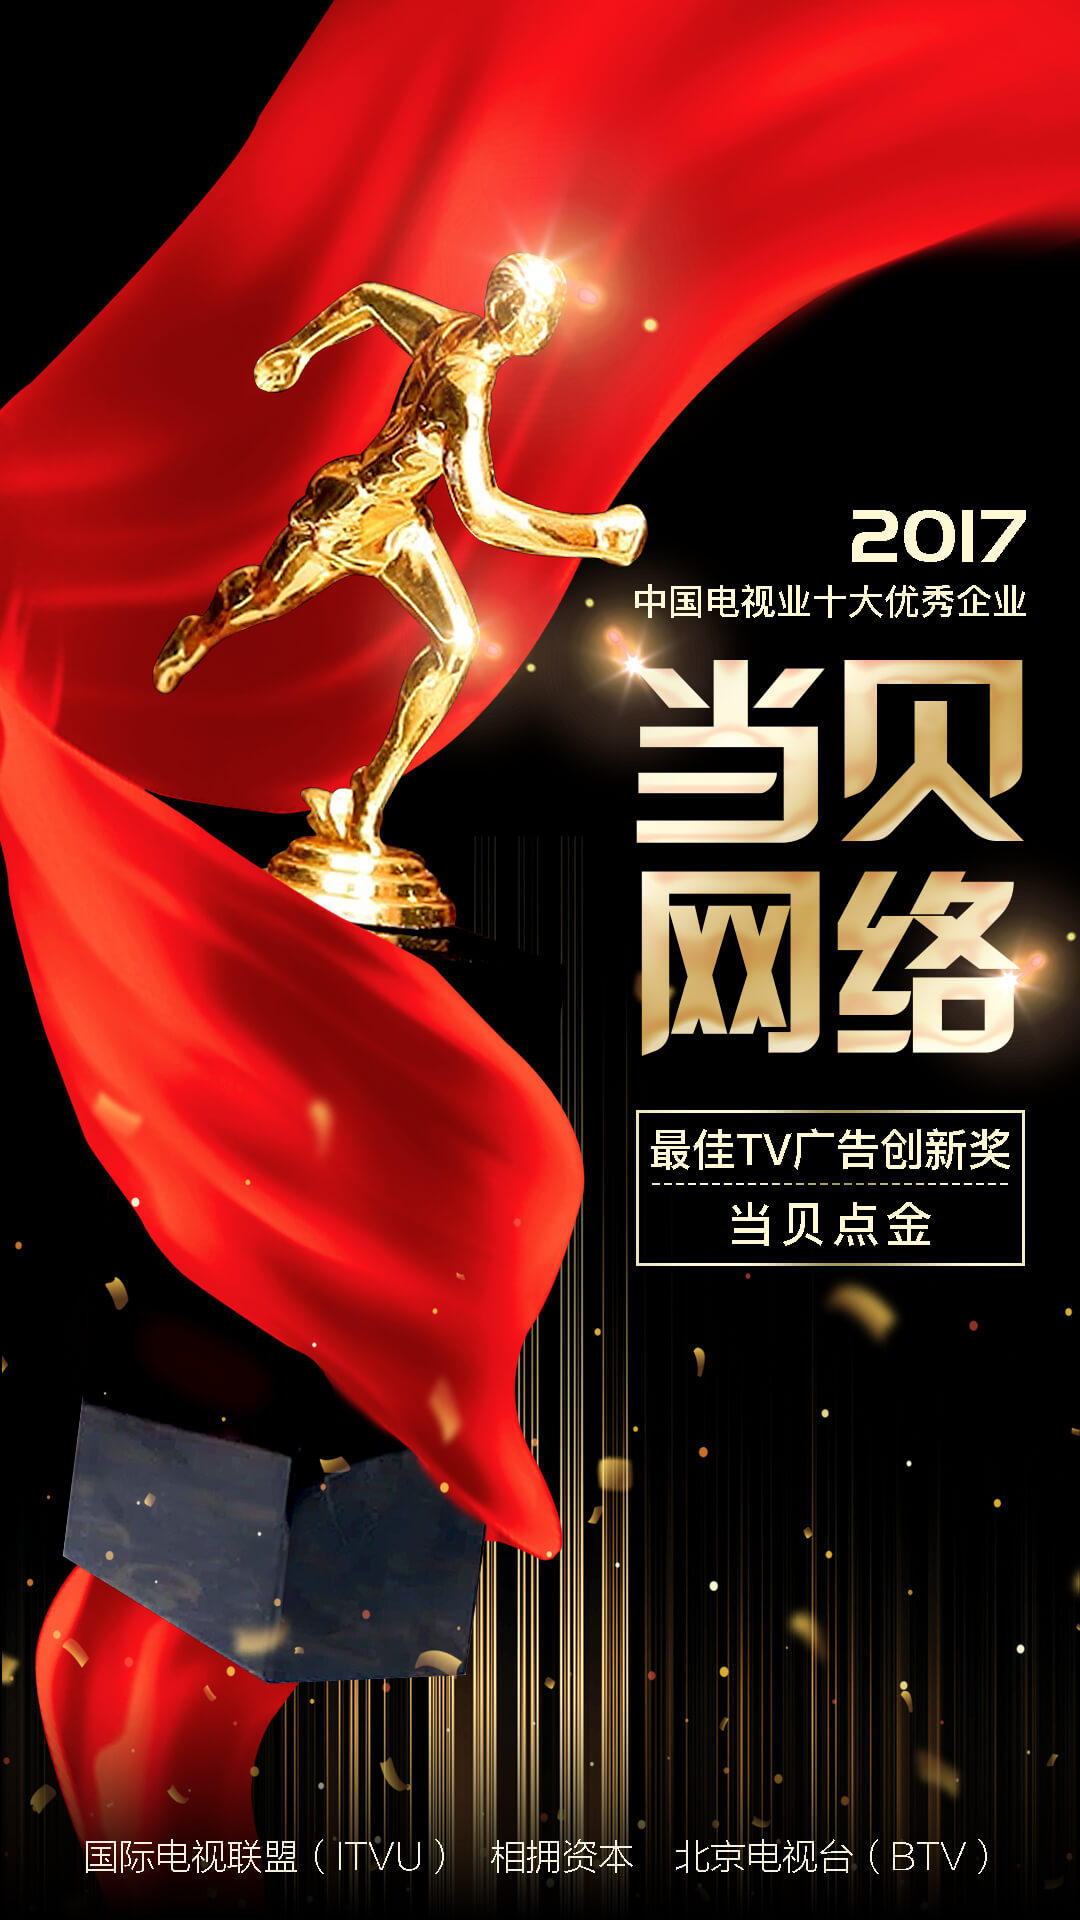 当贝点金荣获2017中国电视业颁奖盛典“最佳TV广告创新奖”